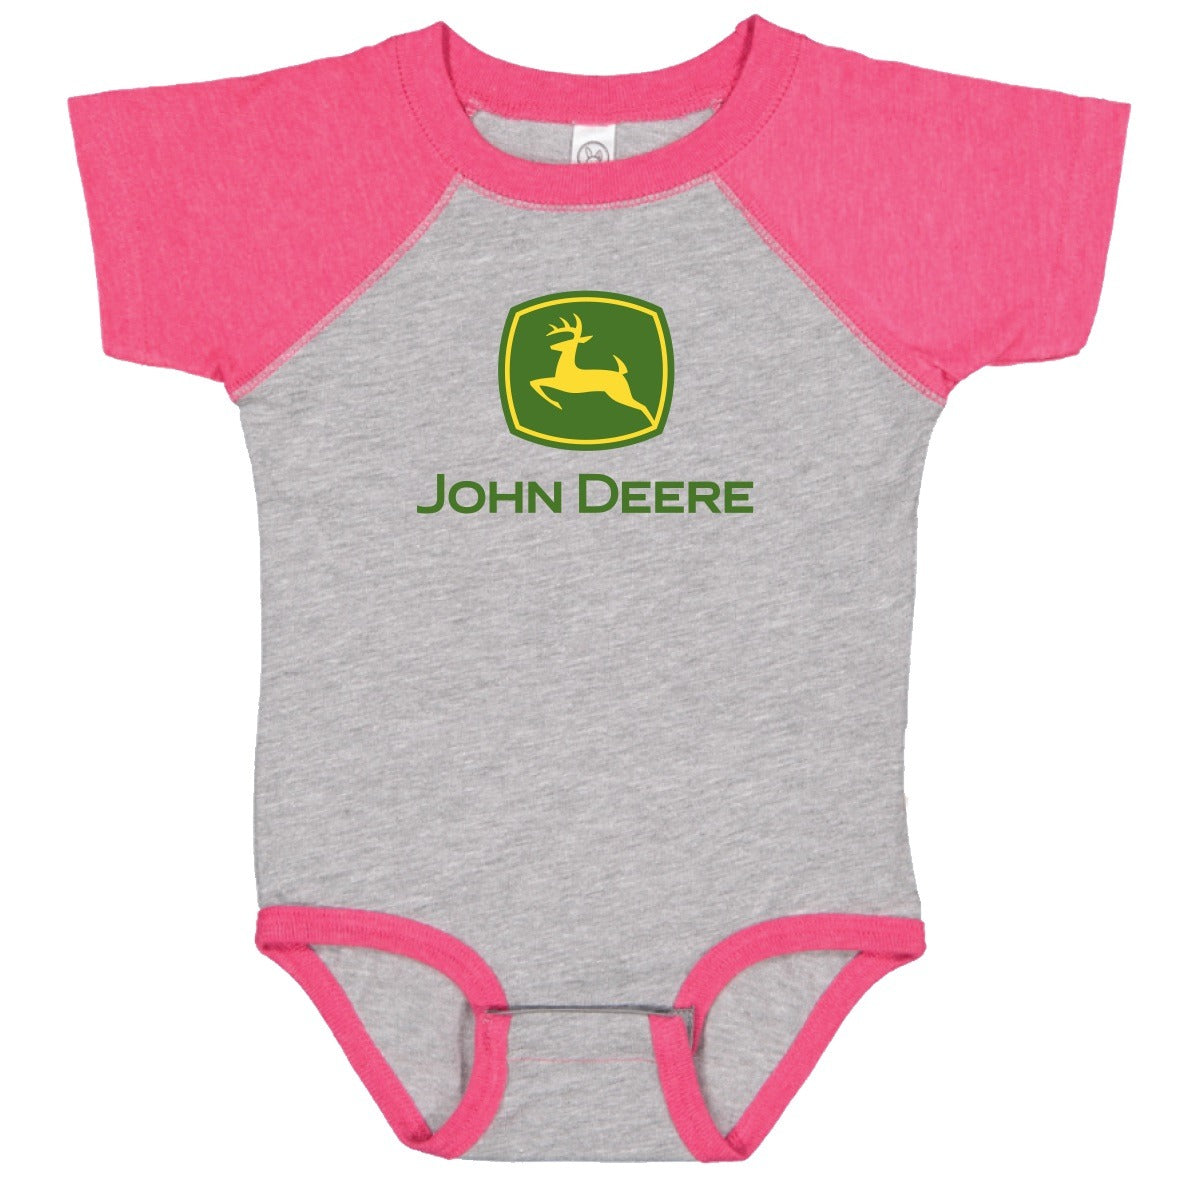 John Deere Infant Girls Bodysuit (18M) - LP74800